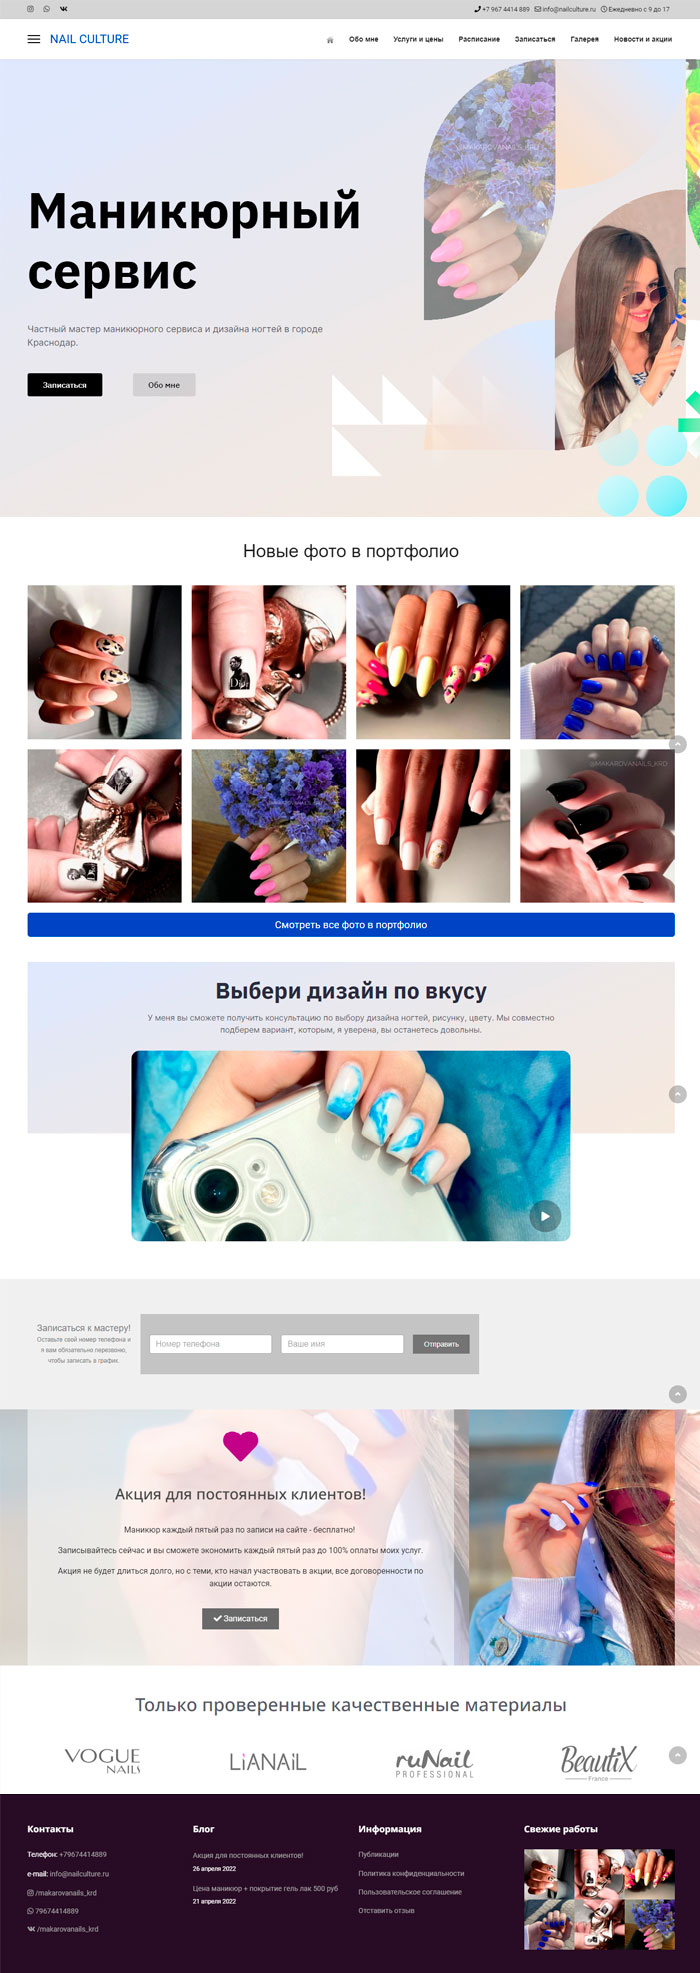 Новый сайт для мастера ногтевого сервиса NAILCULTURE.RU.